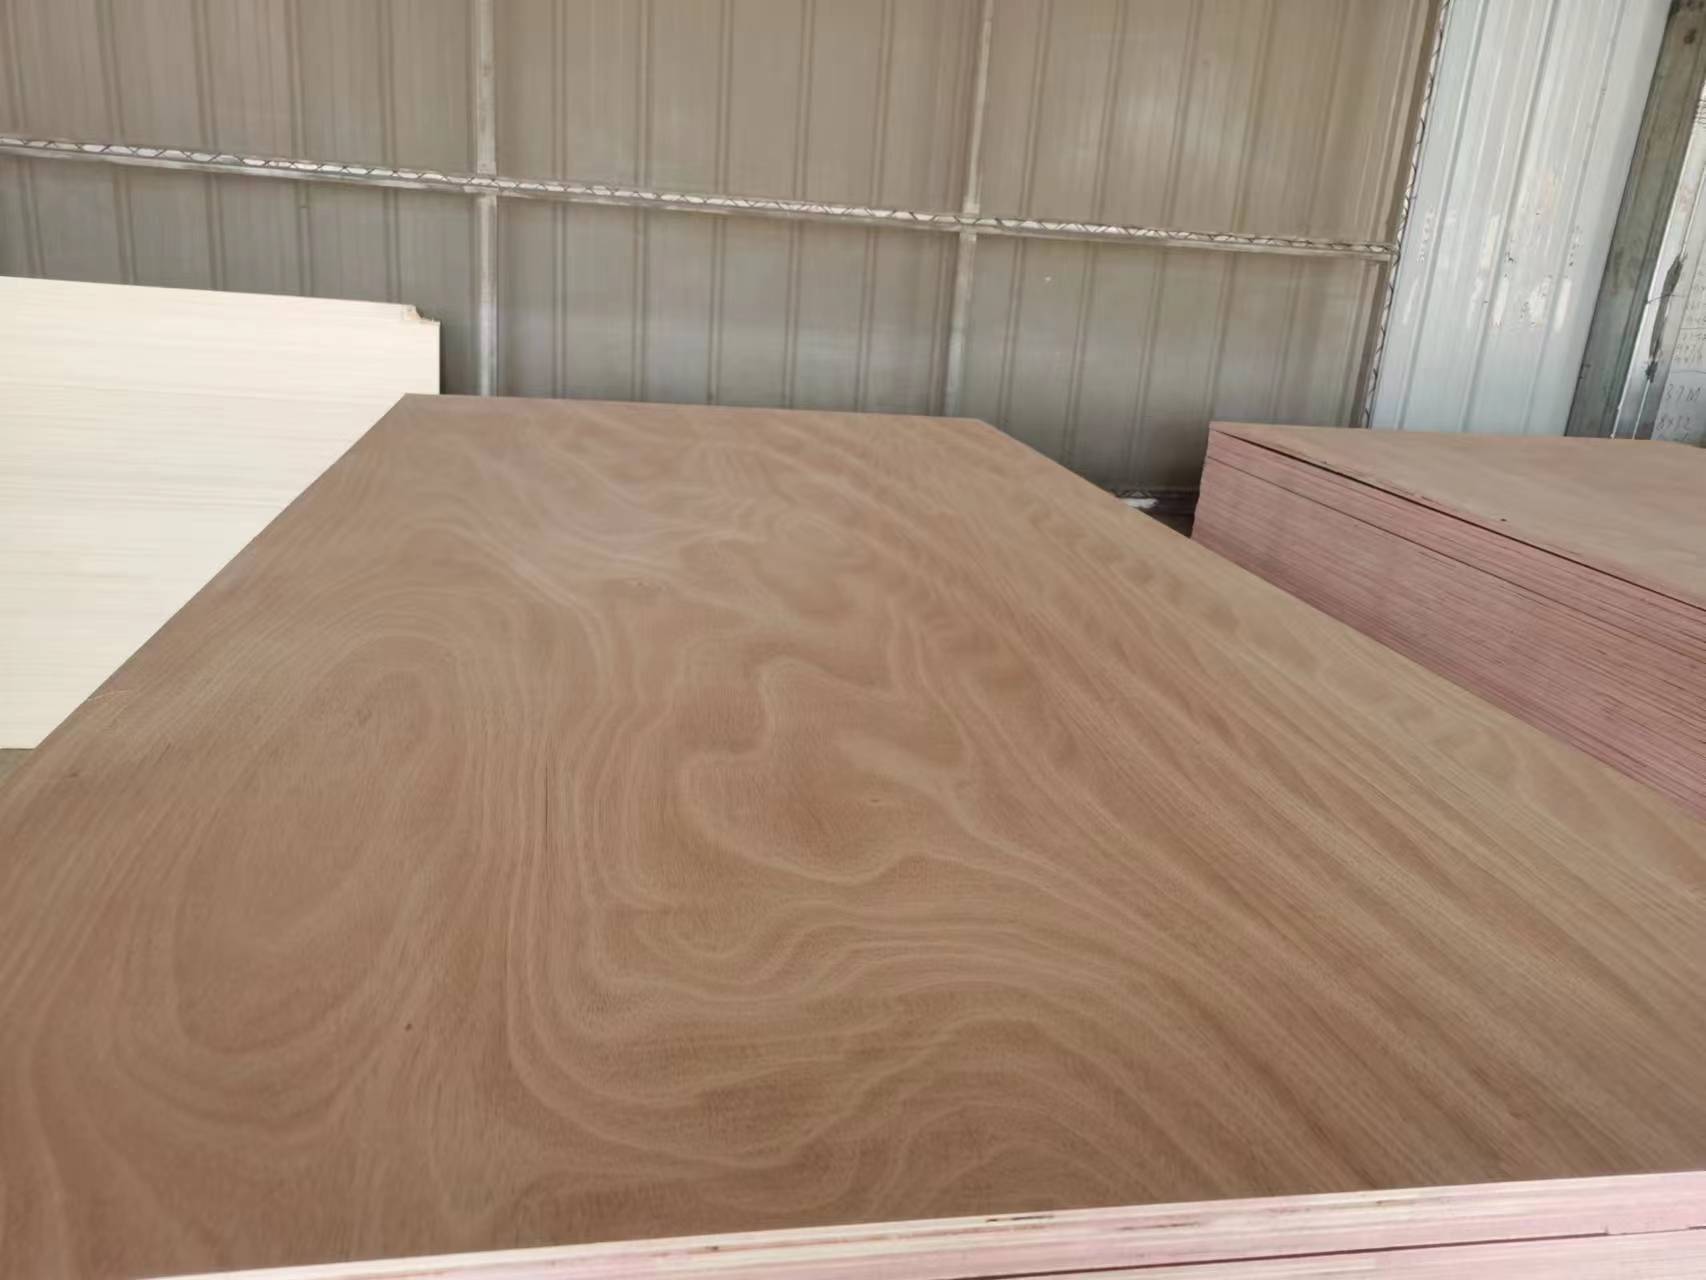 Okoume Marine Plywood sheet 4ftx8ft